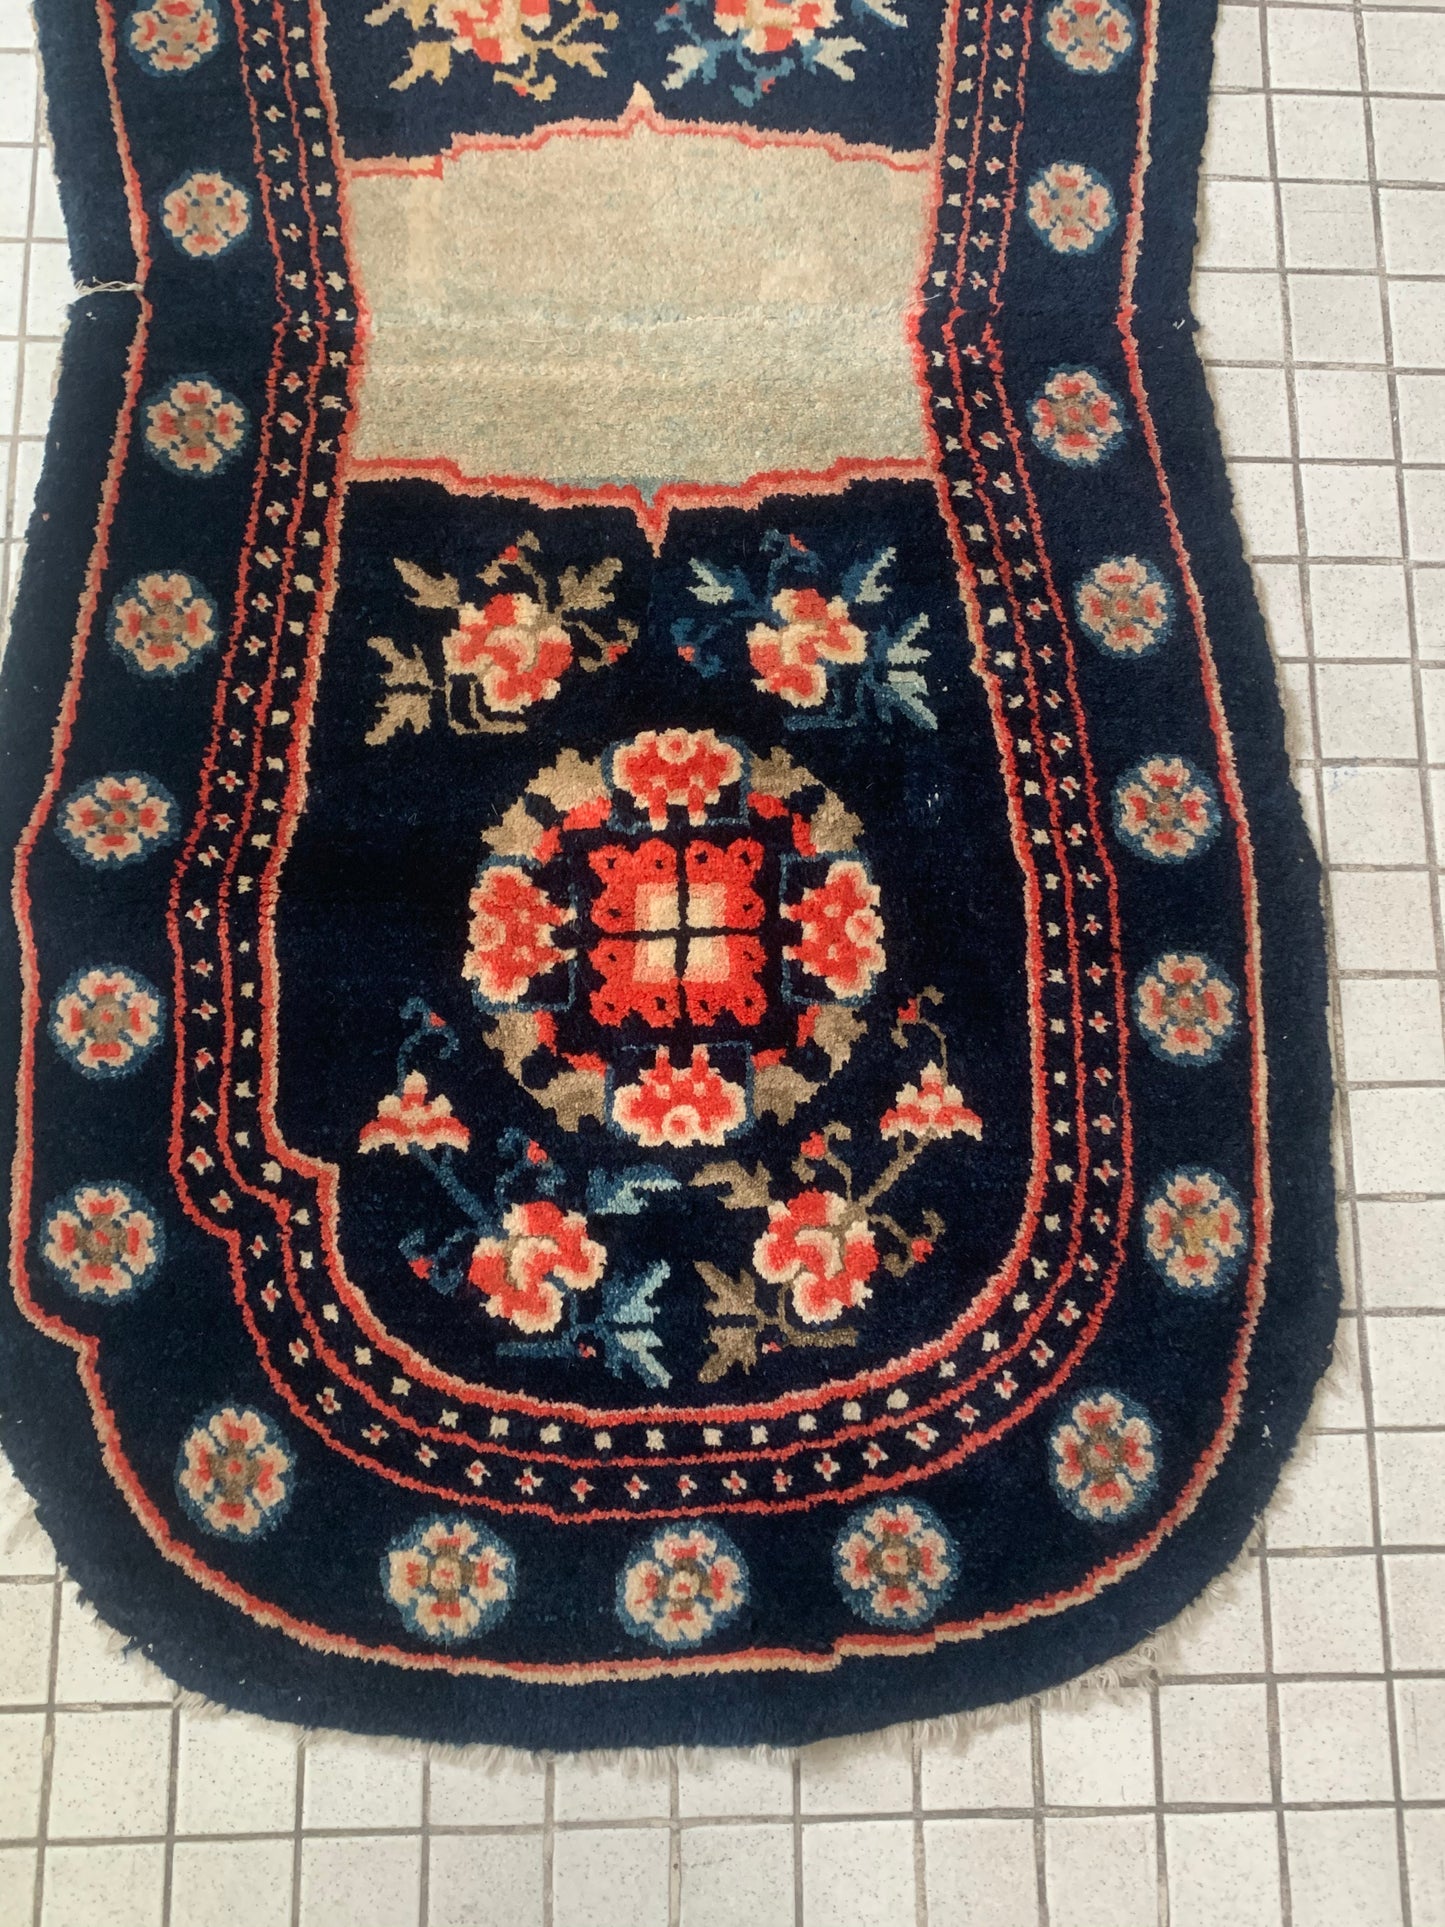 A vintage saddle rug